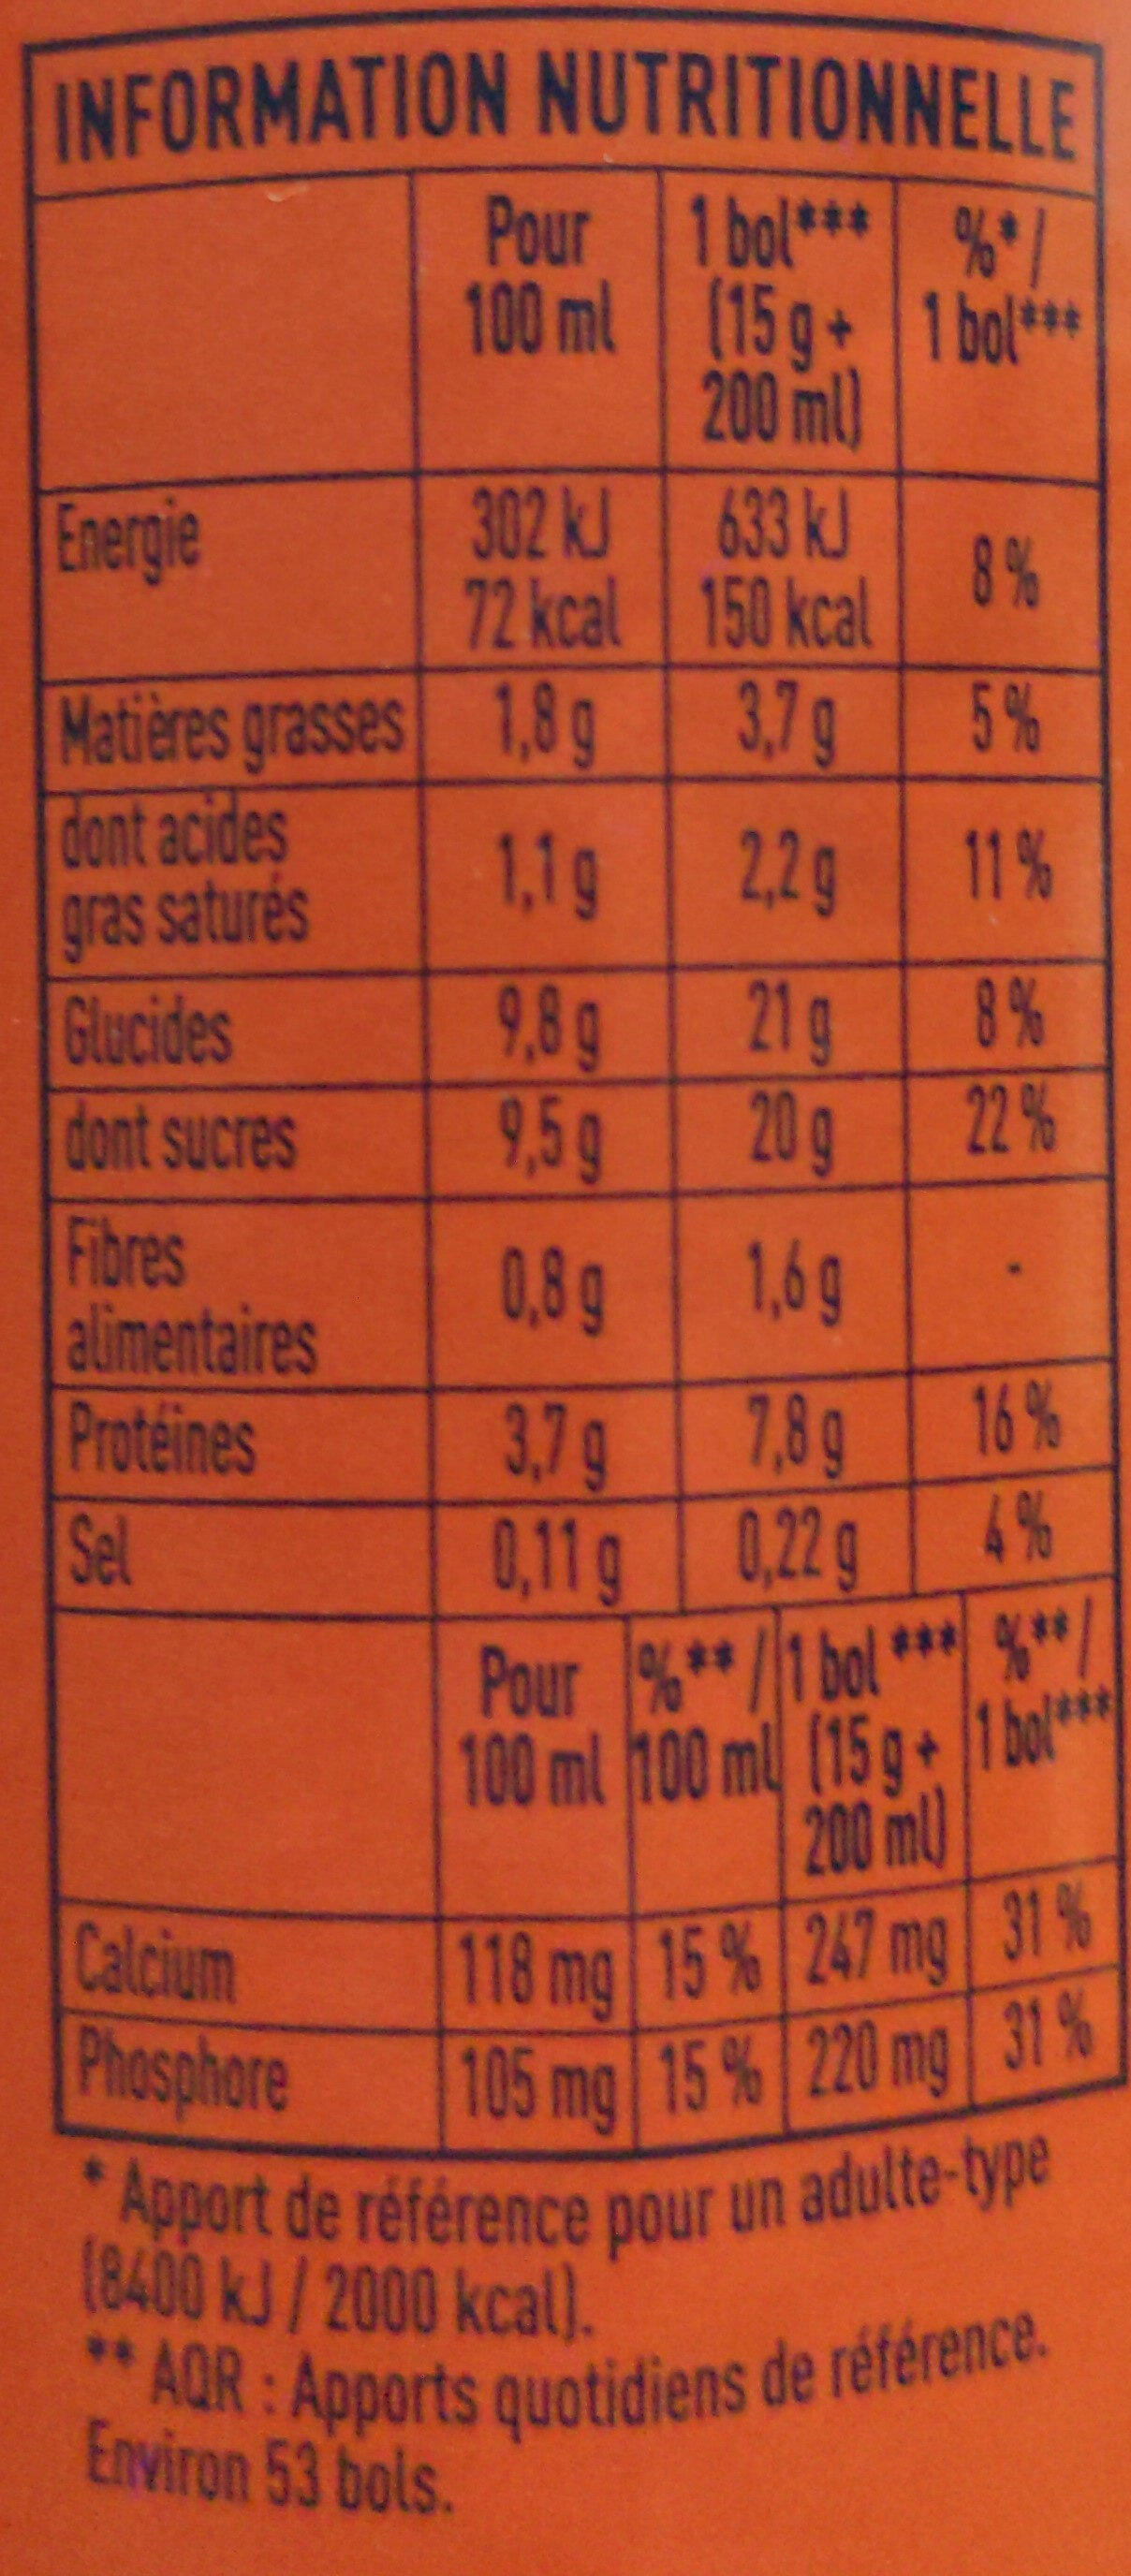 Grand Arôme 32% de Cacao - Nutrition facts - fr